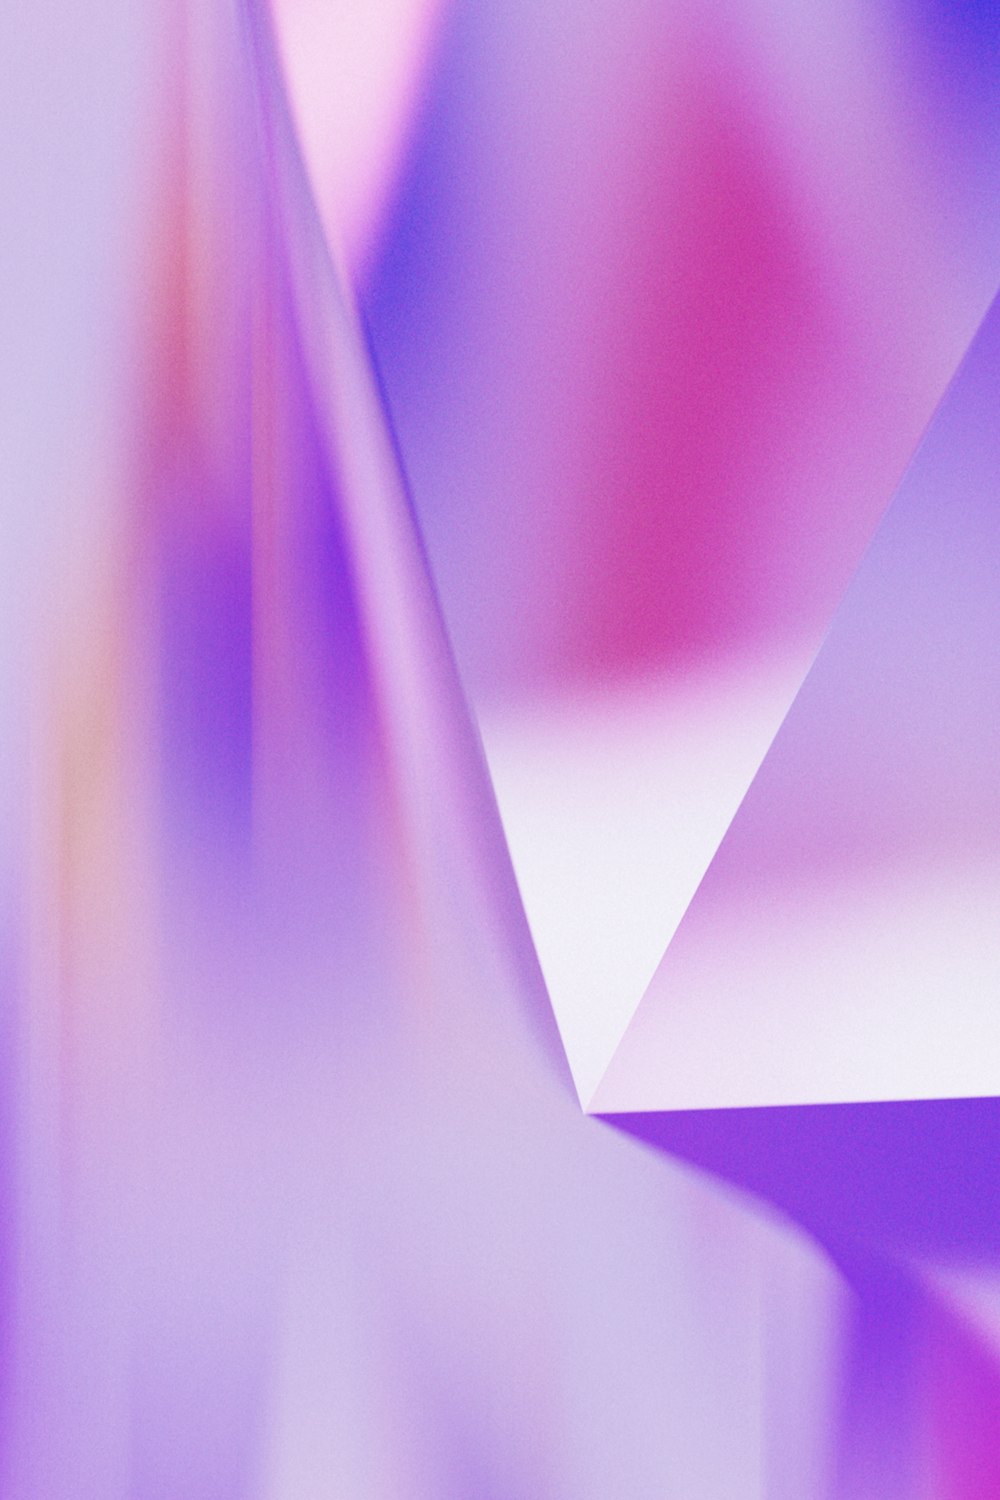 Una imagen borrosa de un objeto blanco y púrpura